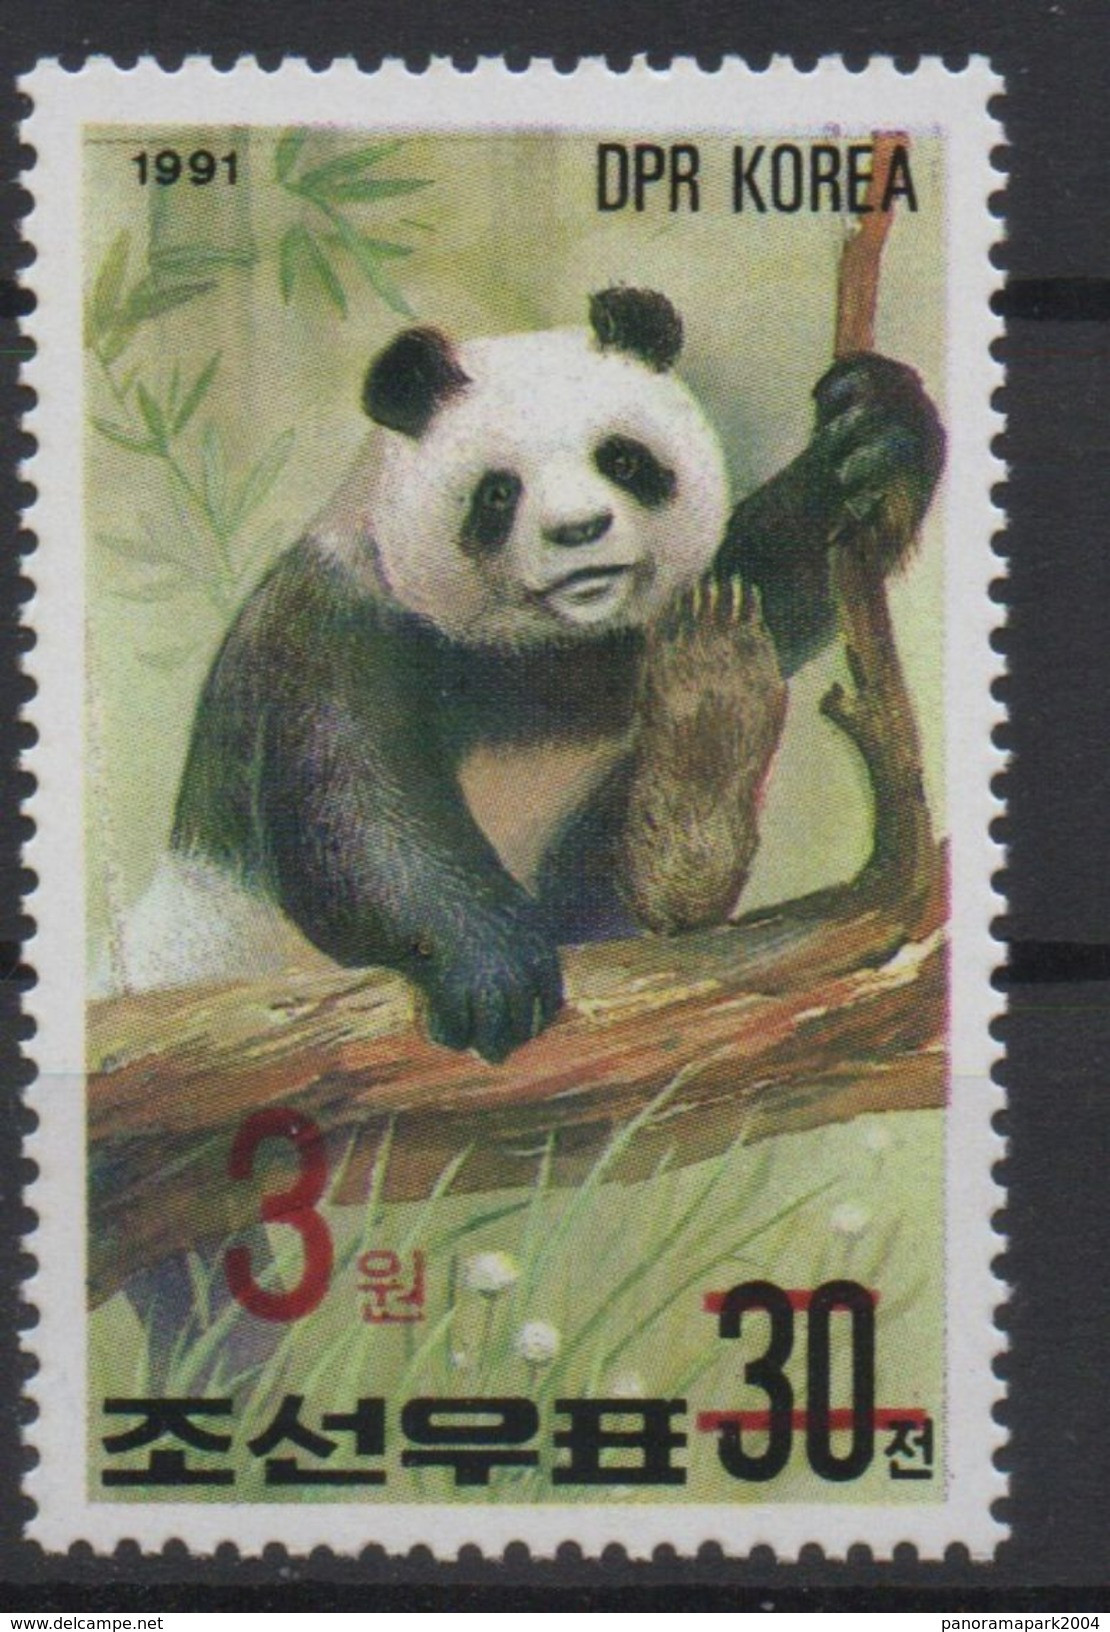 North Korea Corée Du Nord 2006 Mi. 5051 Surchargé Rouge RED OVERPRINT Faune Fauna Ours Bear Bär Panda MNH** RARE - Beren